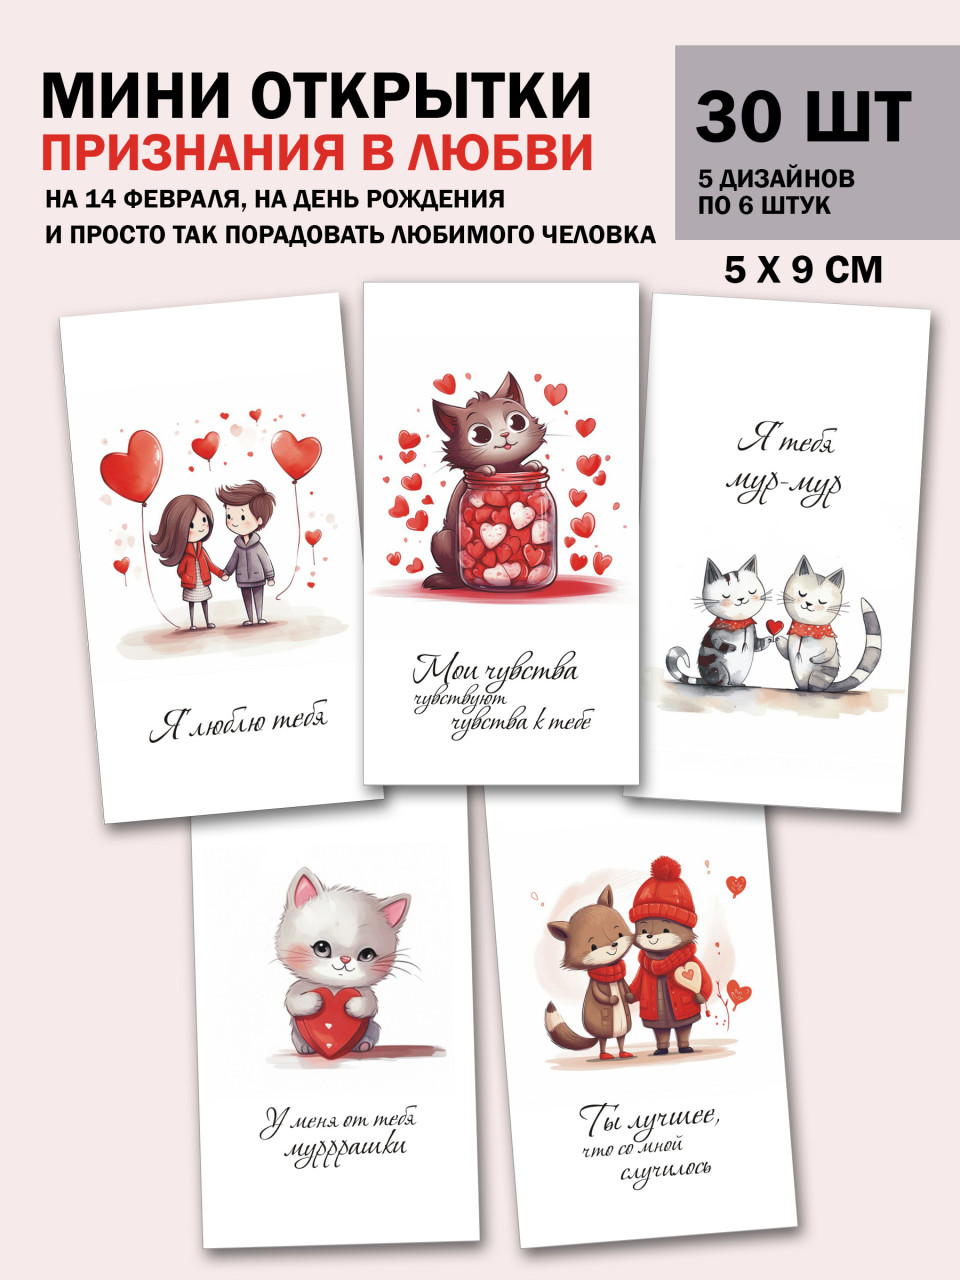 Мини открытки с признаниями в любви, набор 30 шт 50х90 мм - фото